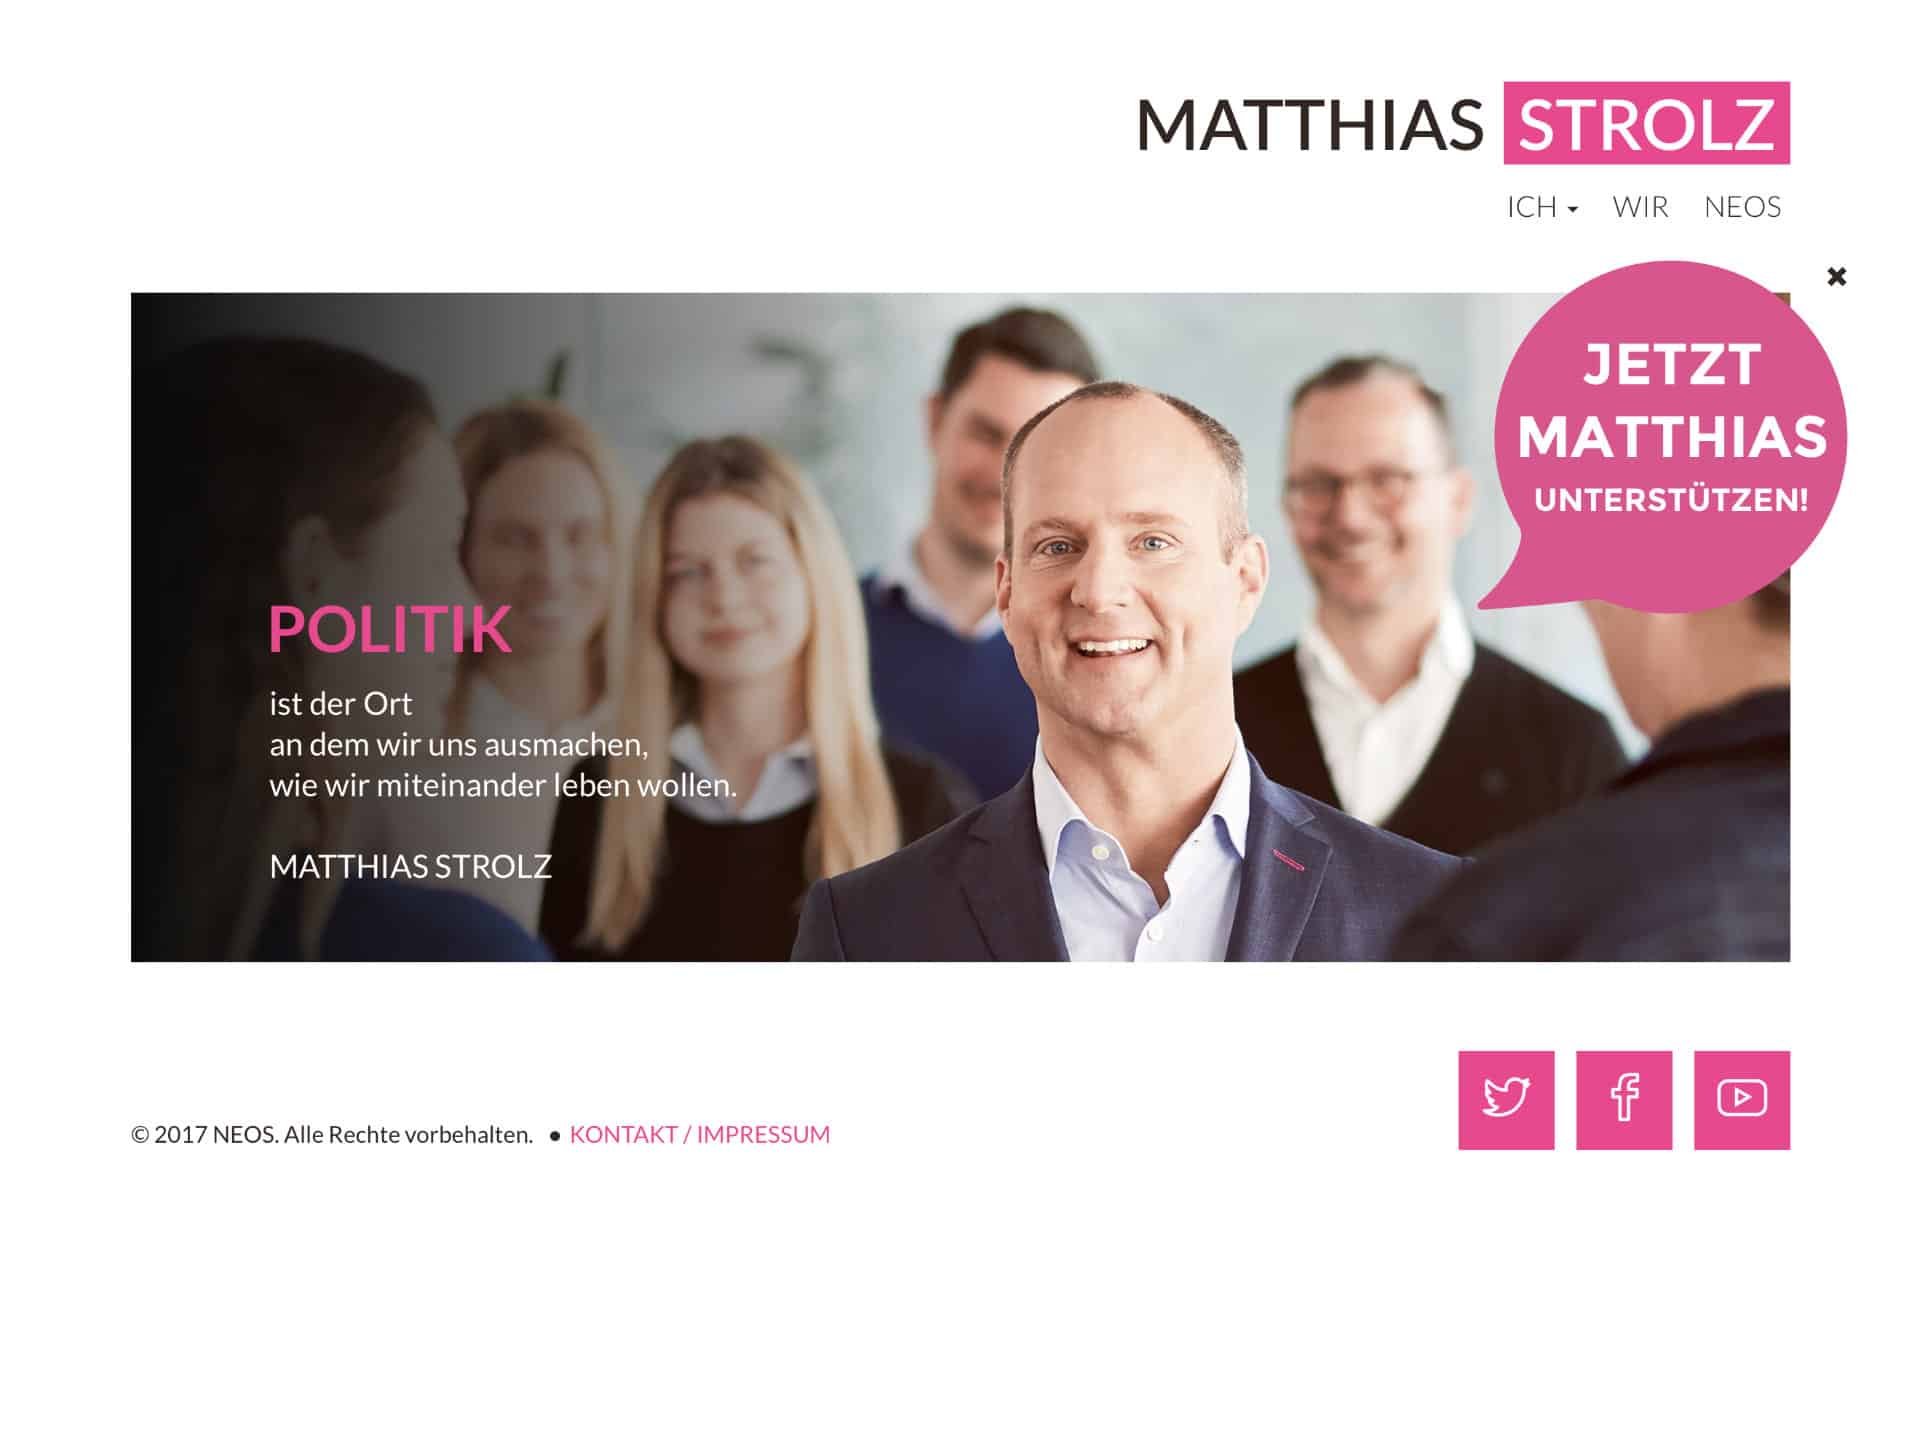 Matthias Strolz